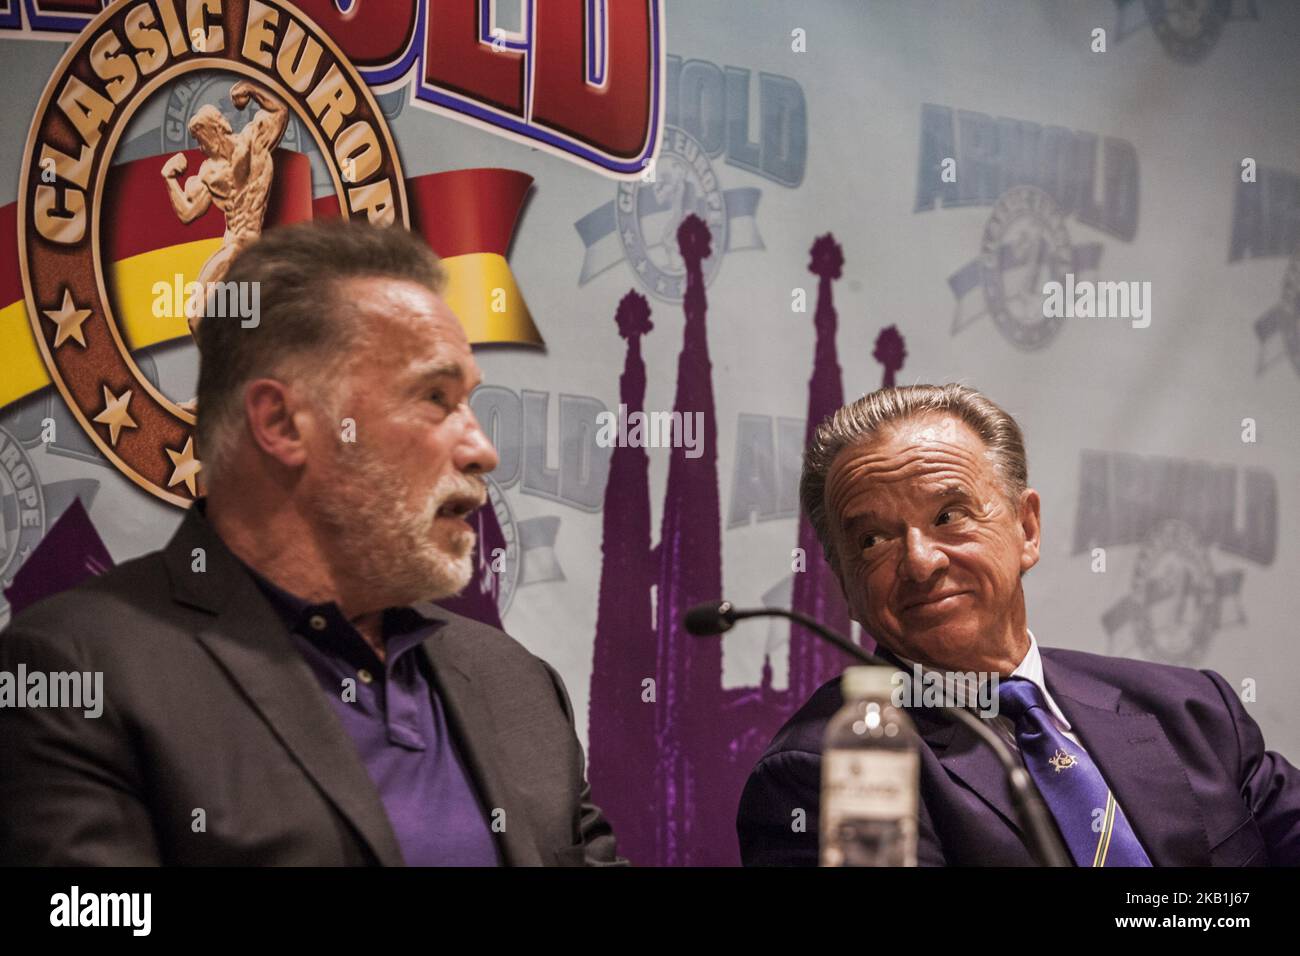 Rafael Santonja, rechts, Präsident des IFBB, beobachtet Arnold Schwarzenegger, links, auf einer Pressekonferenz beim Multisport-Wettbewerb „Arnold Classic Europe“ 2018 in Barcelona, Spanien, am 28. September 2018. (Foto von Celestino Arce/NurPhoto) Stockfoto